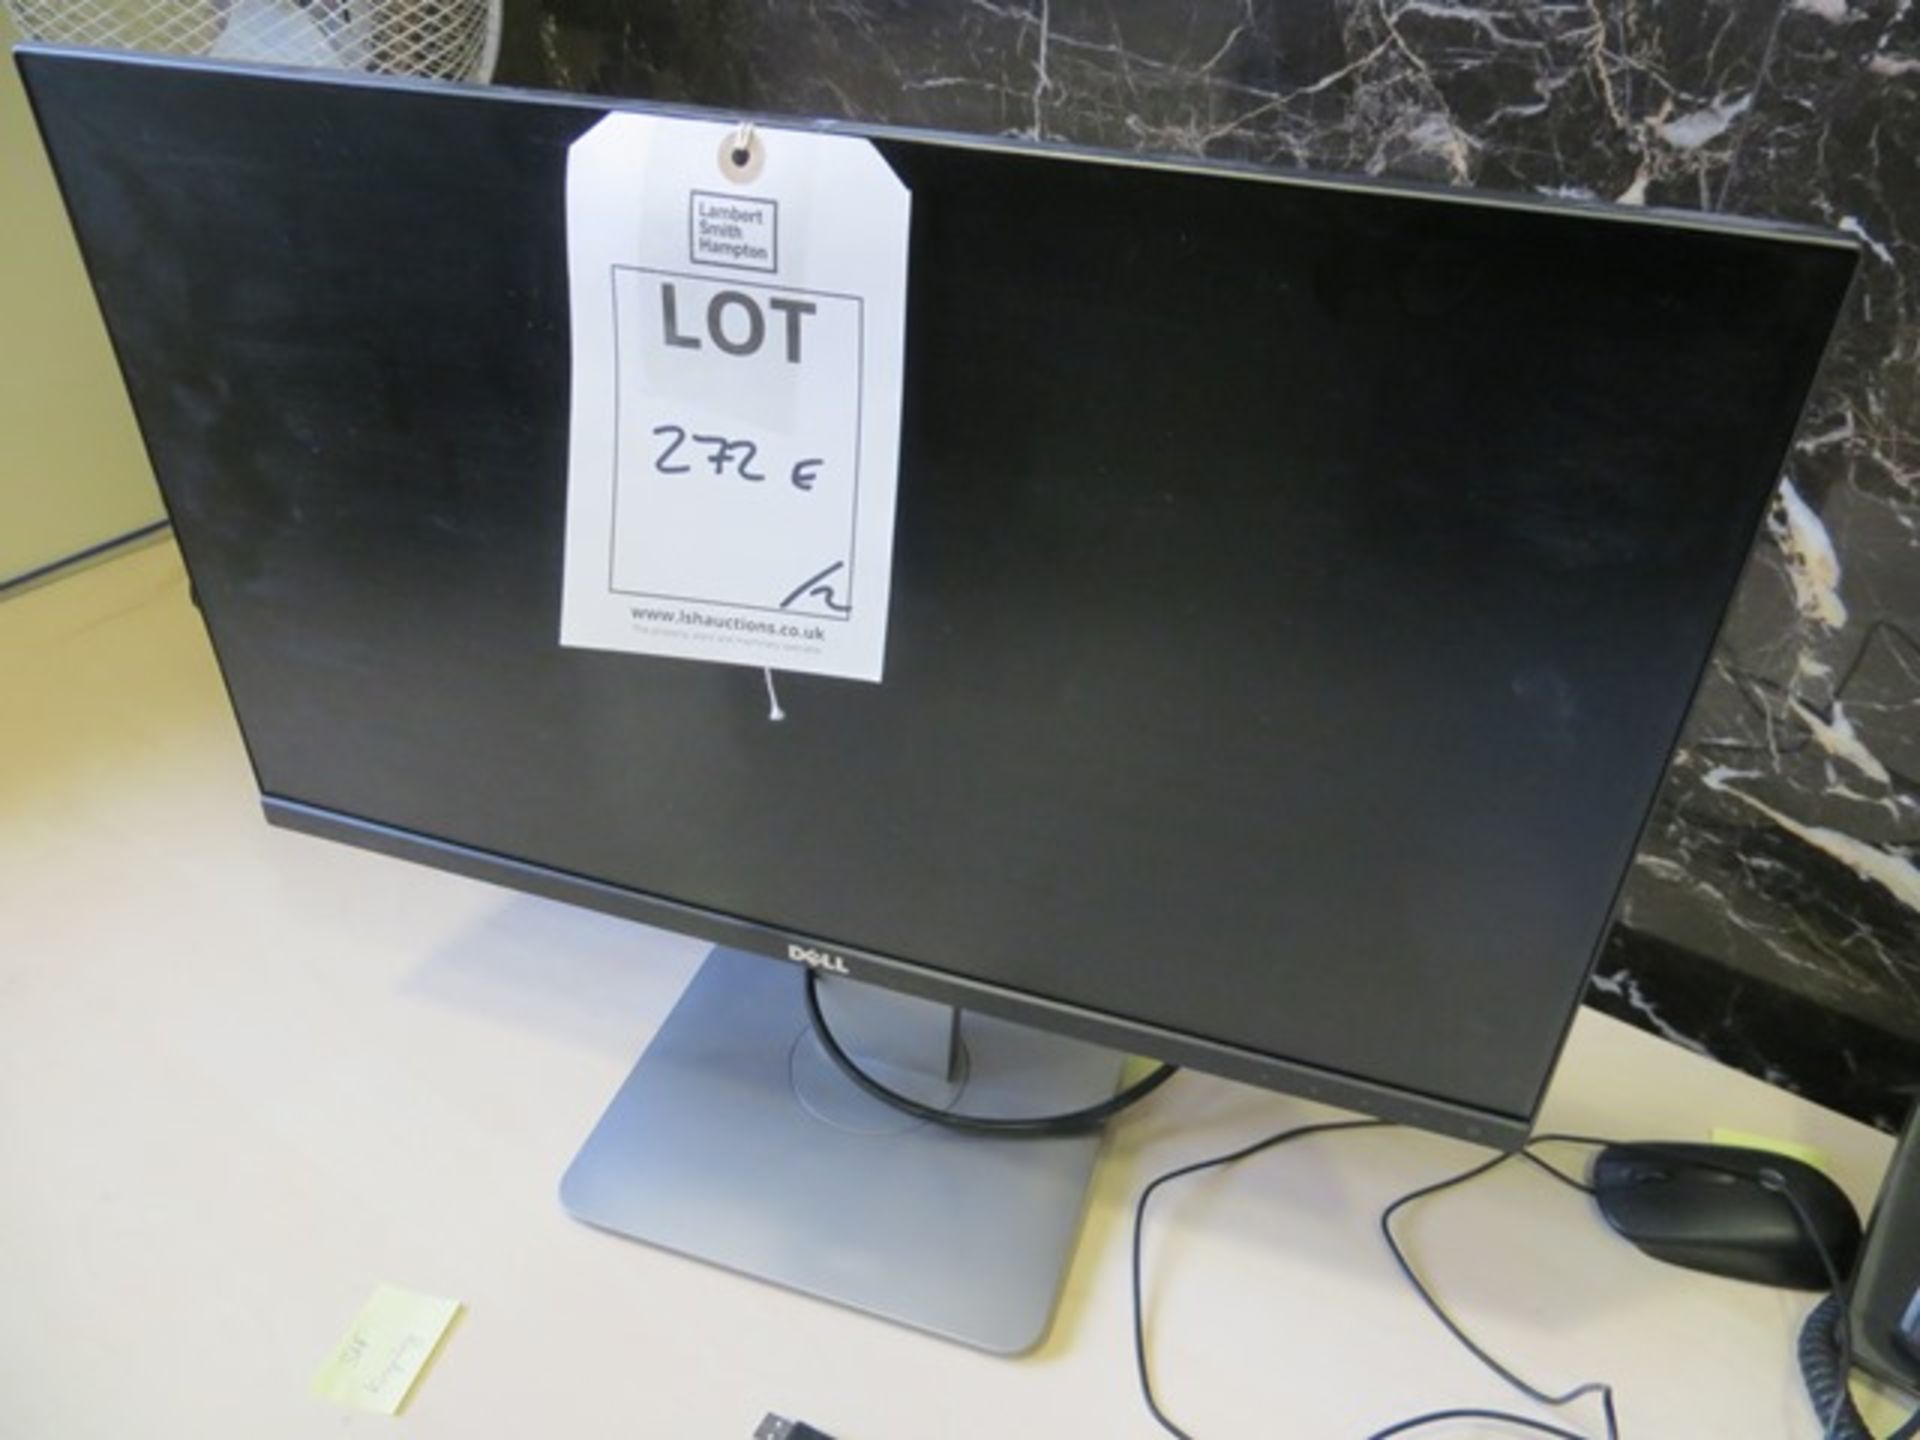 Two Dell LCD 24" colour monitors model U2414HB